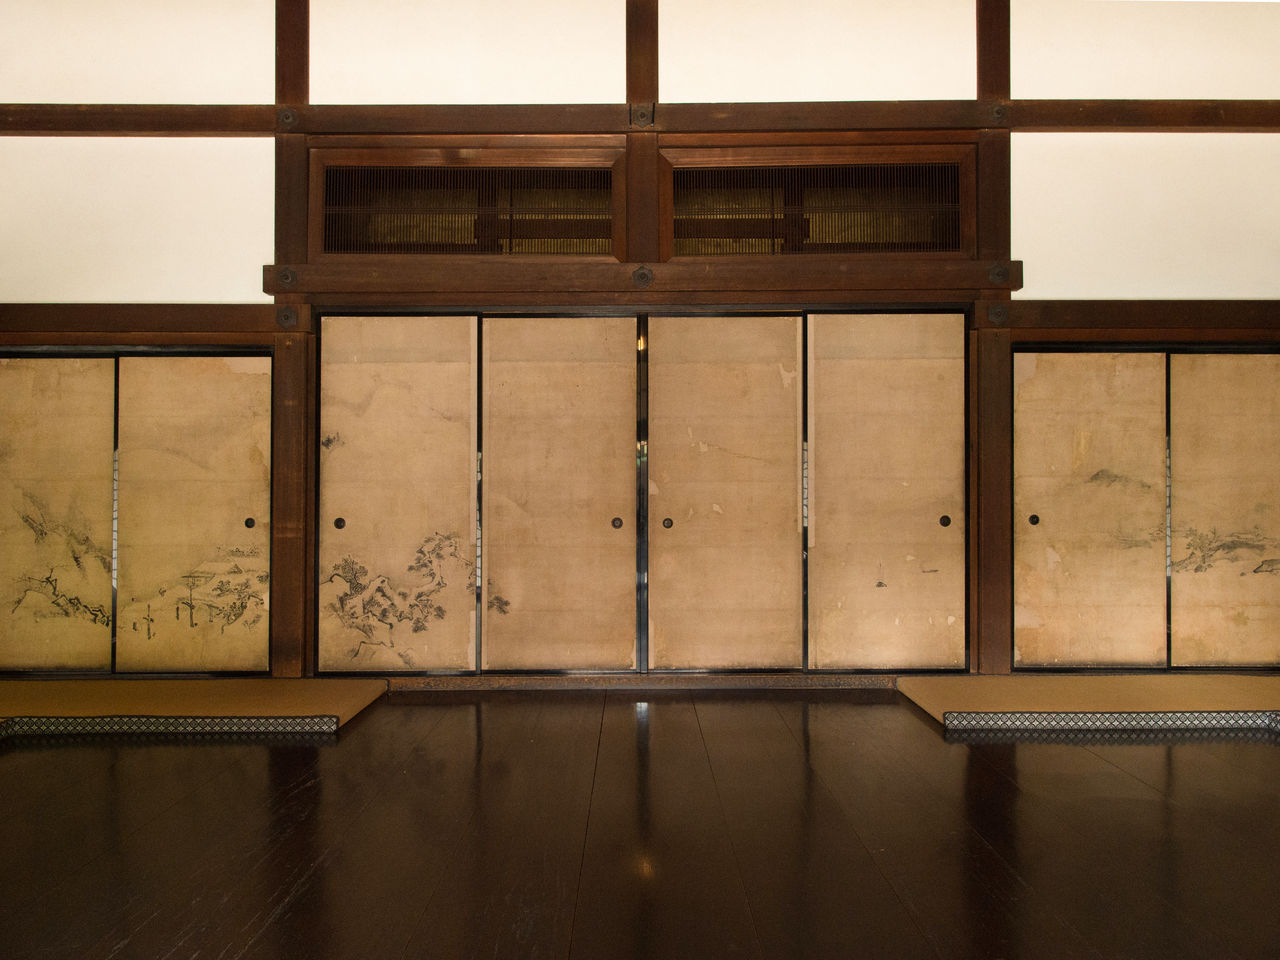 لوحة المناظر الطبيعية المعلقة على فوسوما غرفة رئيس الدير المركزية.